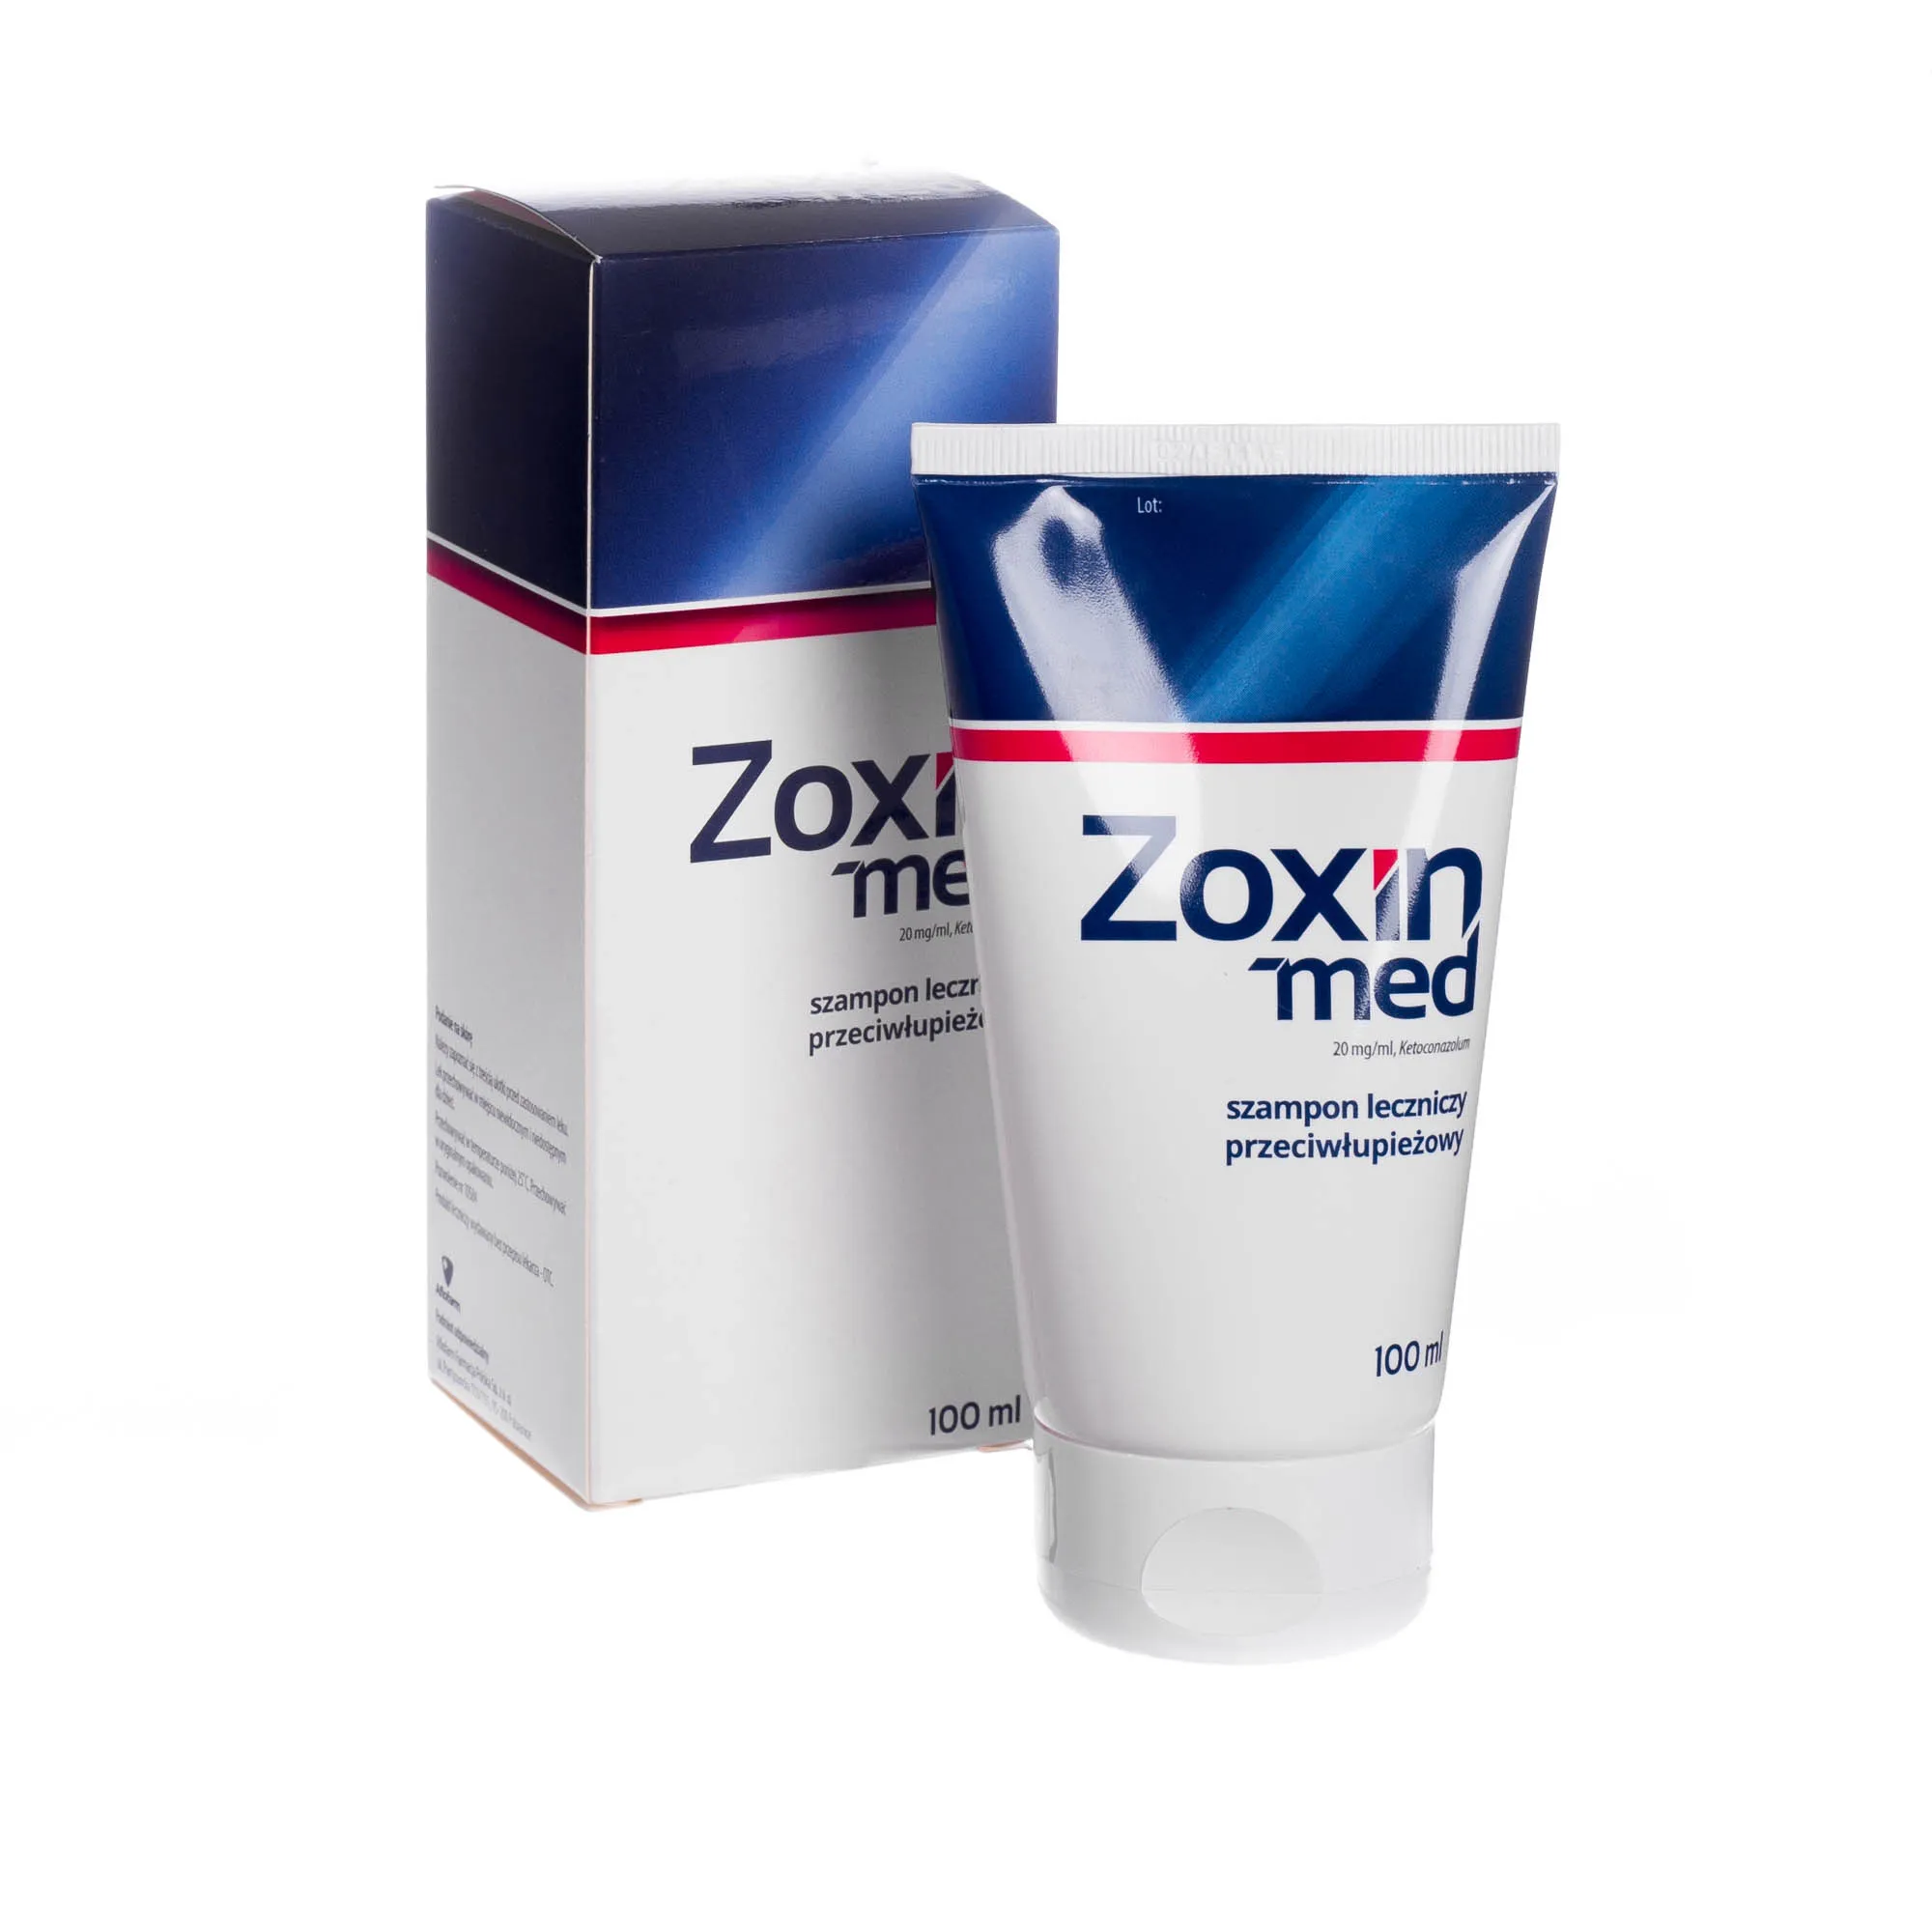 Zoxinmed, Ketoconazolum 20mg/ml, szampon leczniczy przeciwłupieżowy